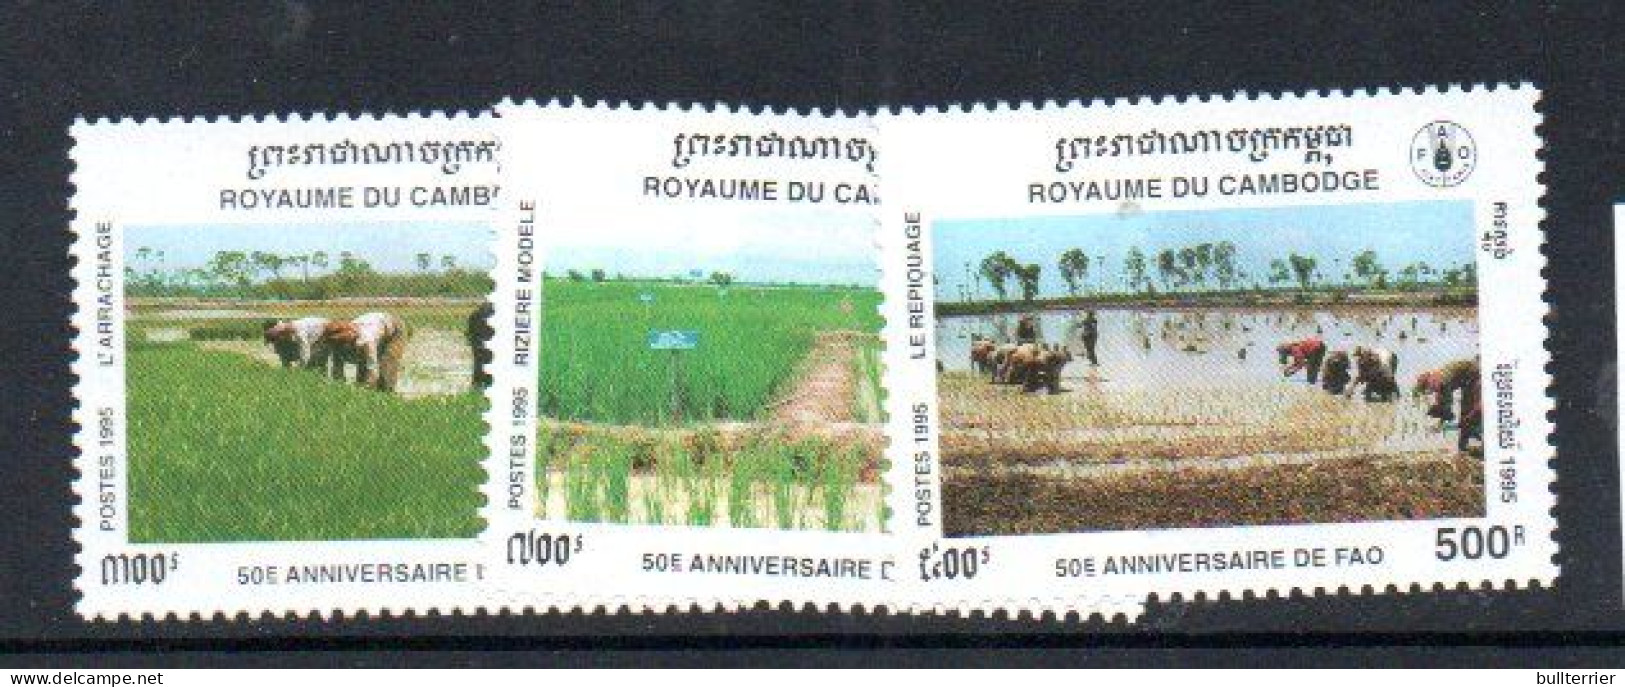 CAMBODIA - 1995 - FAO ANNIVERSARY SET OF 2  MINT NEVER HINGED - Cambodia